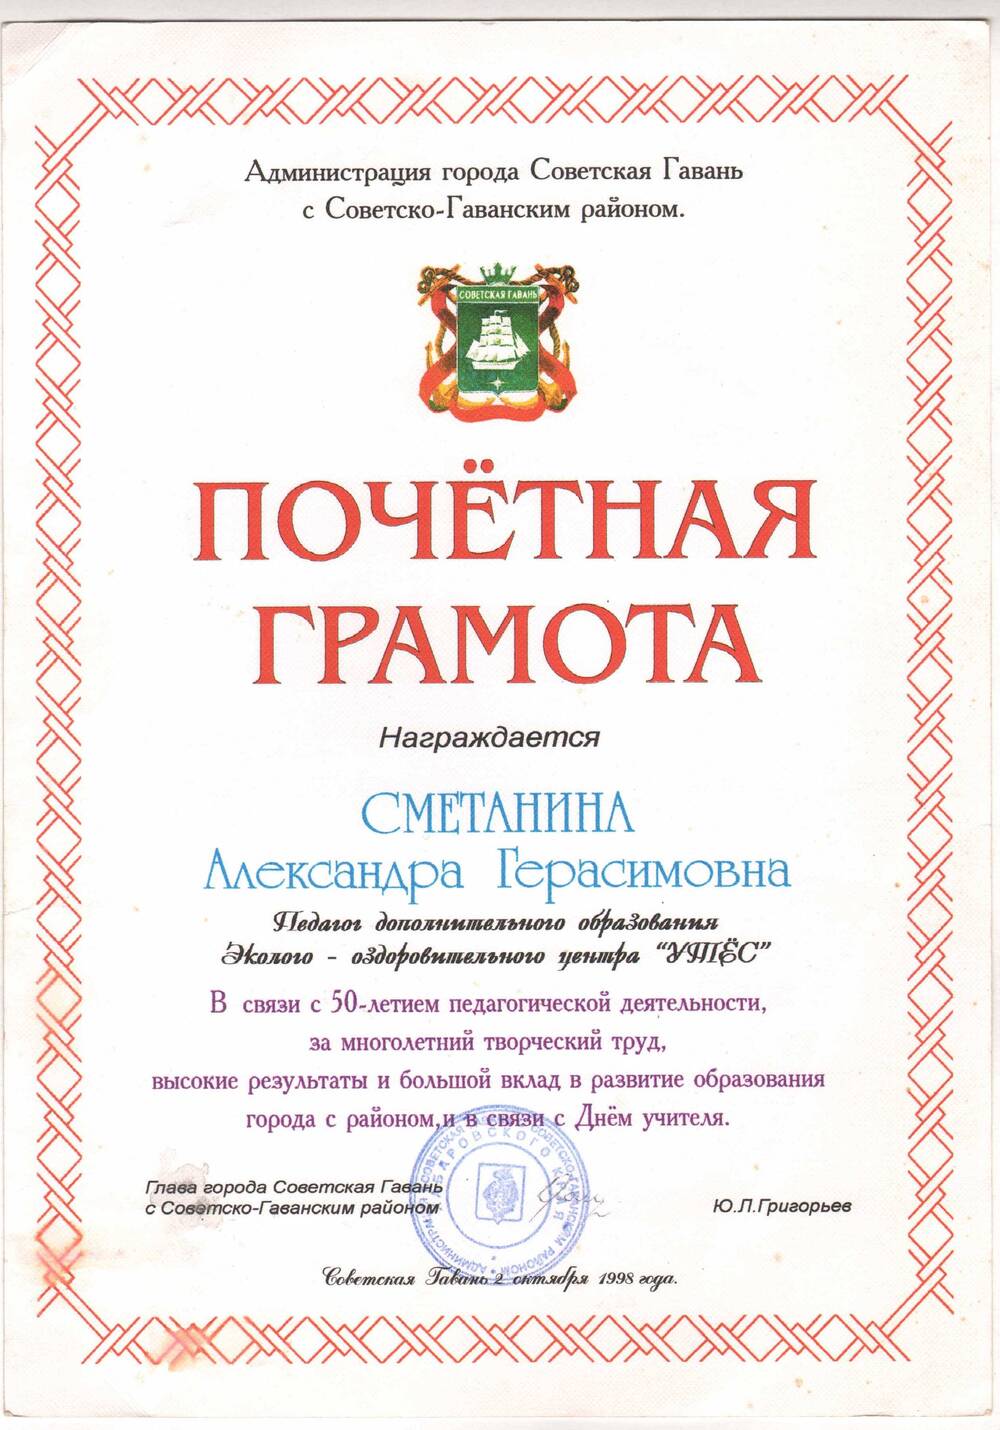 Почётная грамота Сметаниной А.Г в связи с 50-летием педагогической деятельности